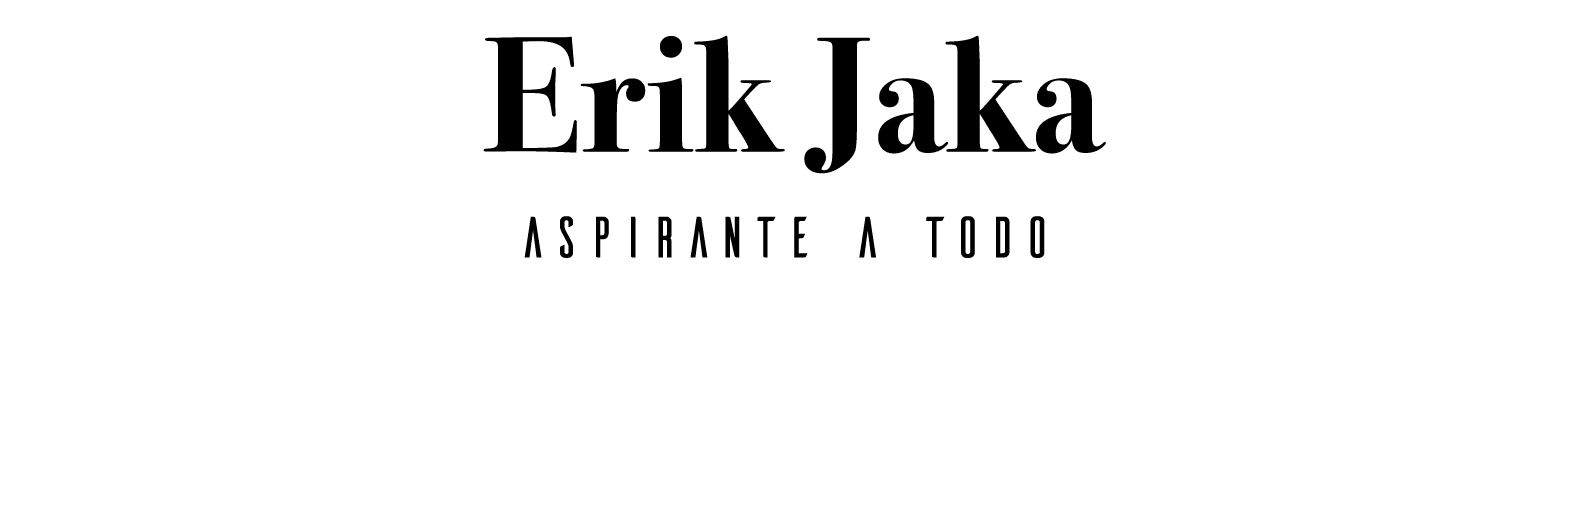 Erik Jaka Aspirante a todo